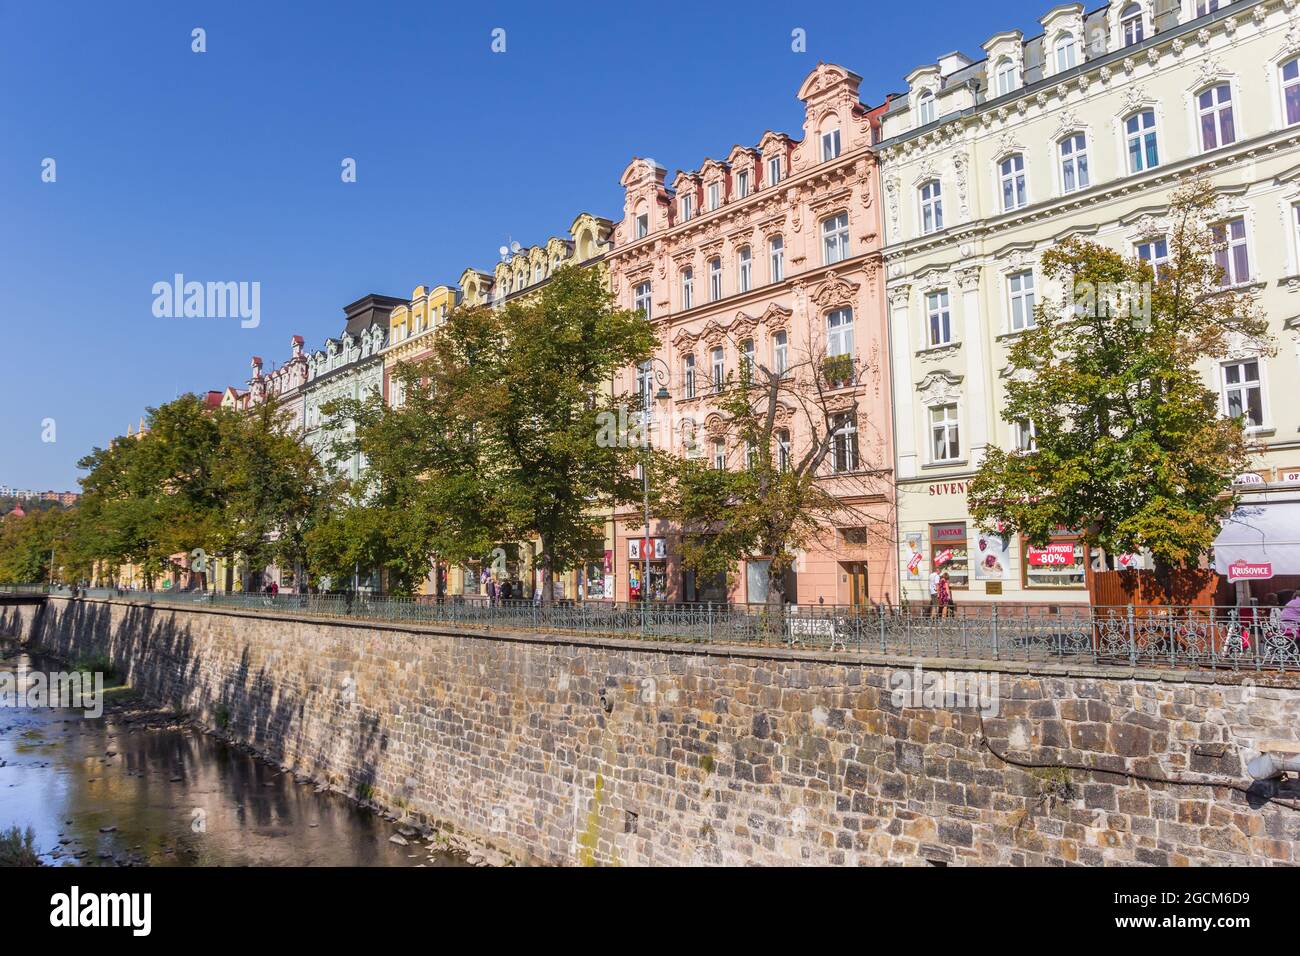 Bunte historische Häuser am Kai in Karlovy Vary, Tschechien Stockfoto